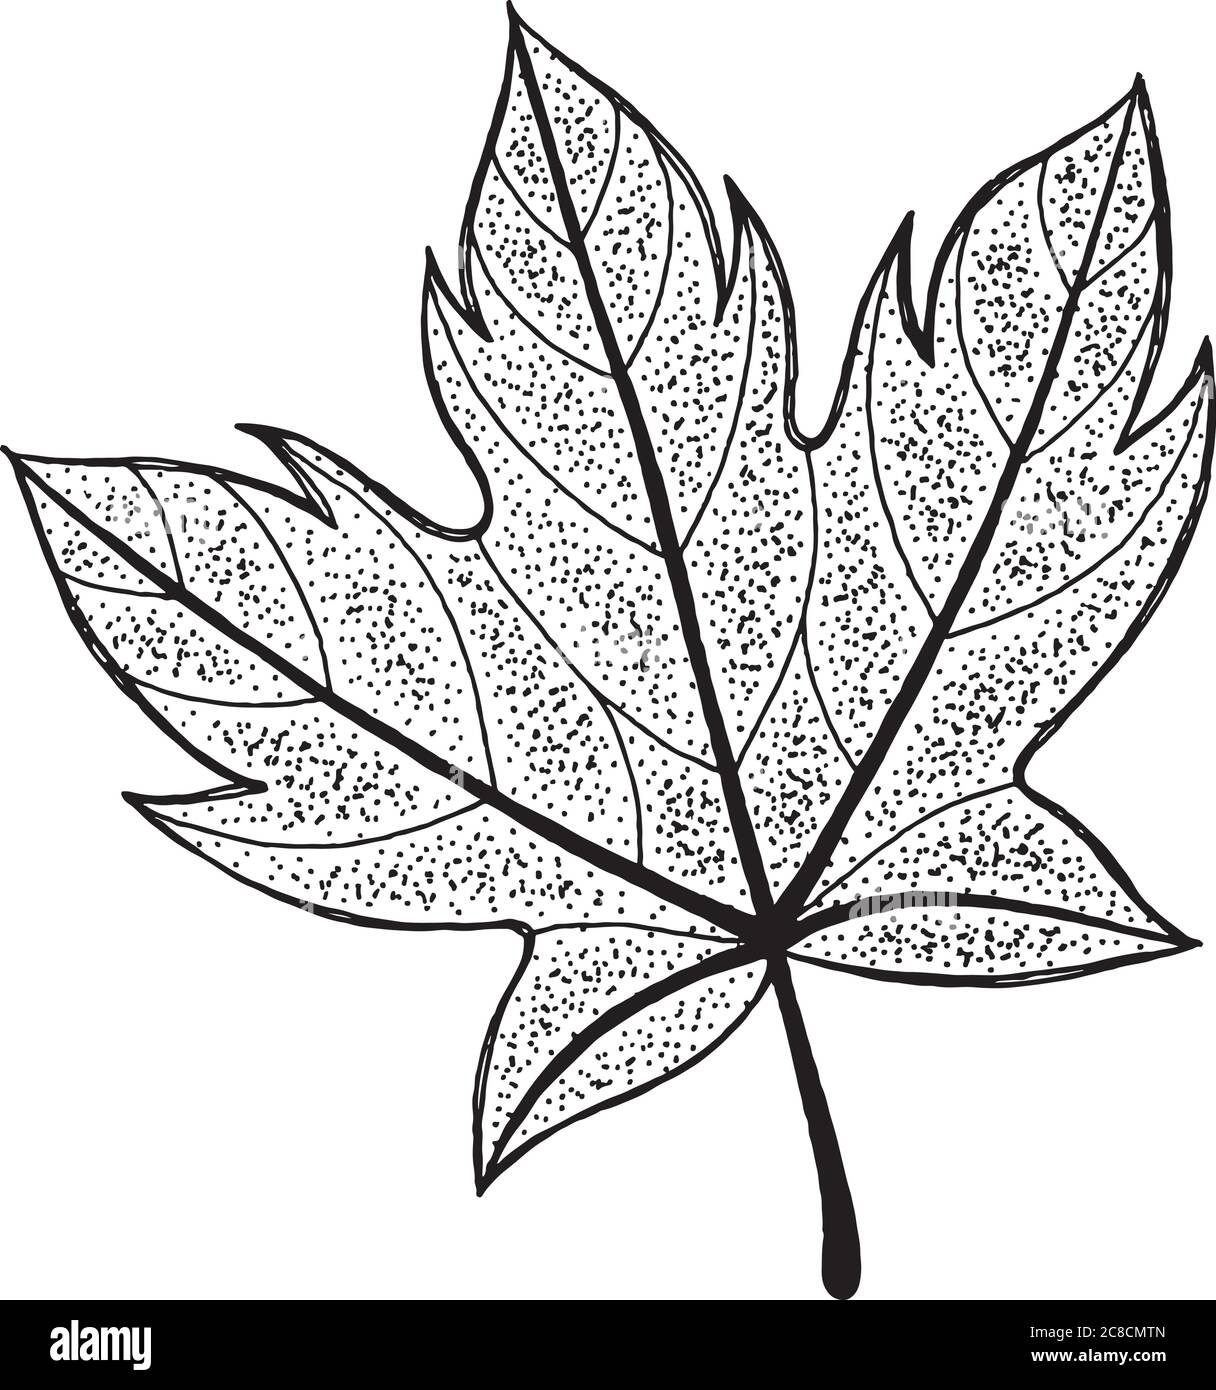 Ink Sketch Of Maple Leaf Stock Illustration - Download Image Now - Maple  Leaf, Vector, Sketch - iStock